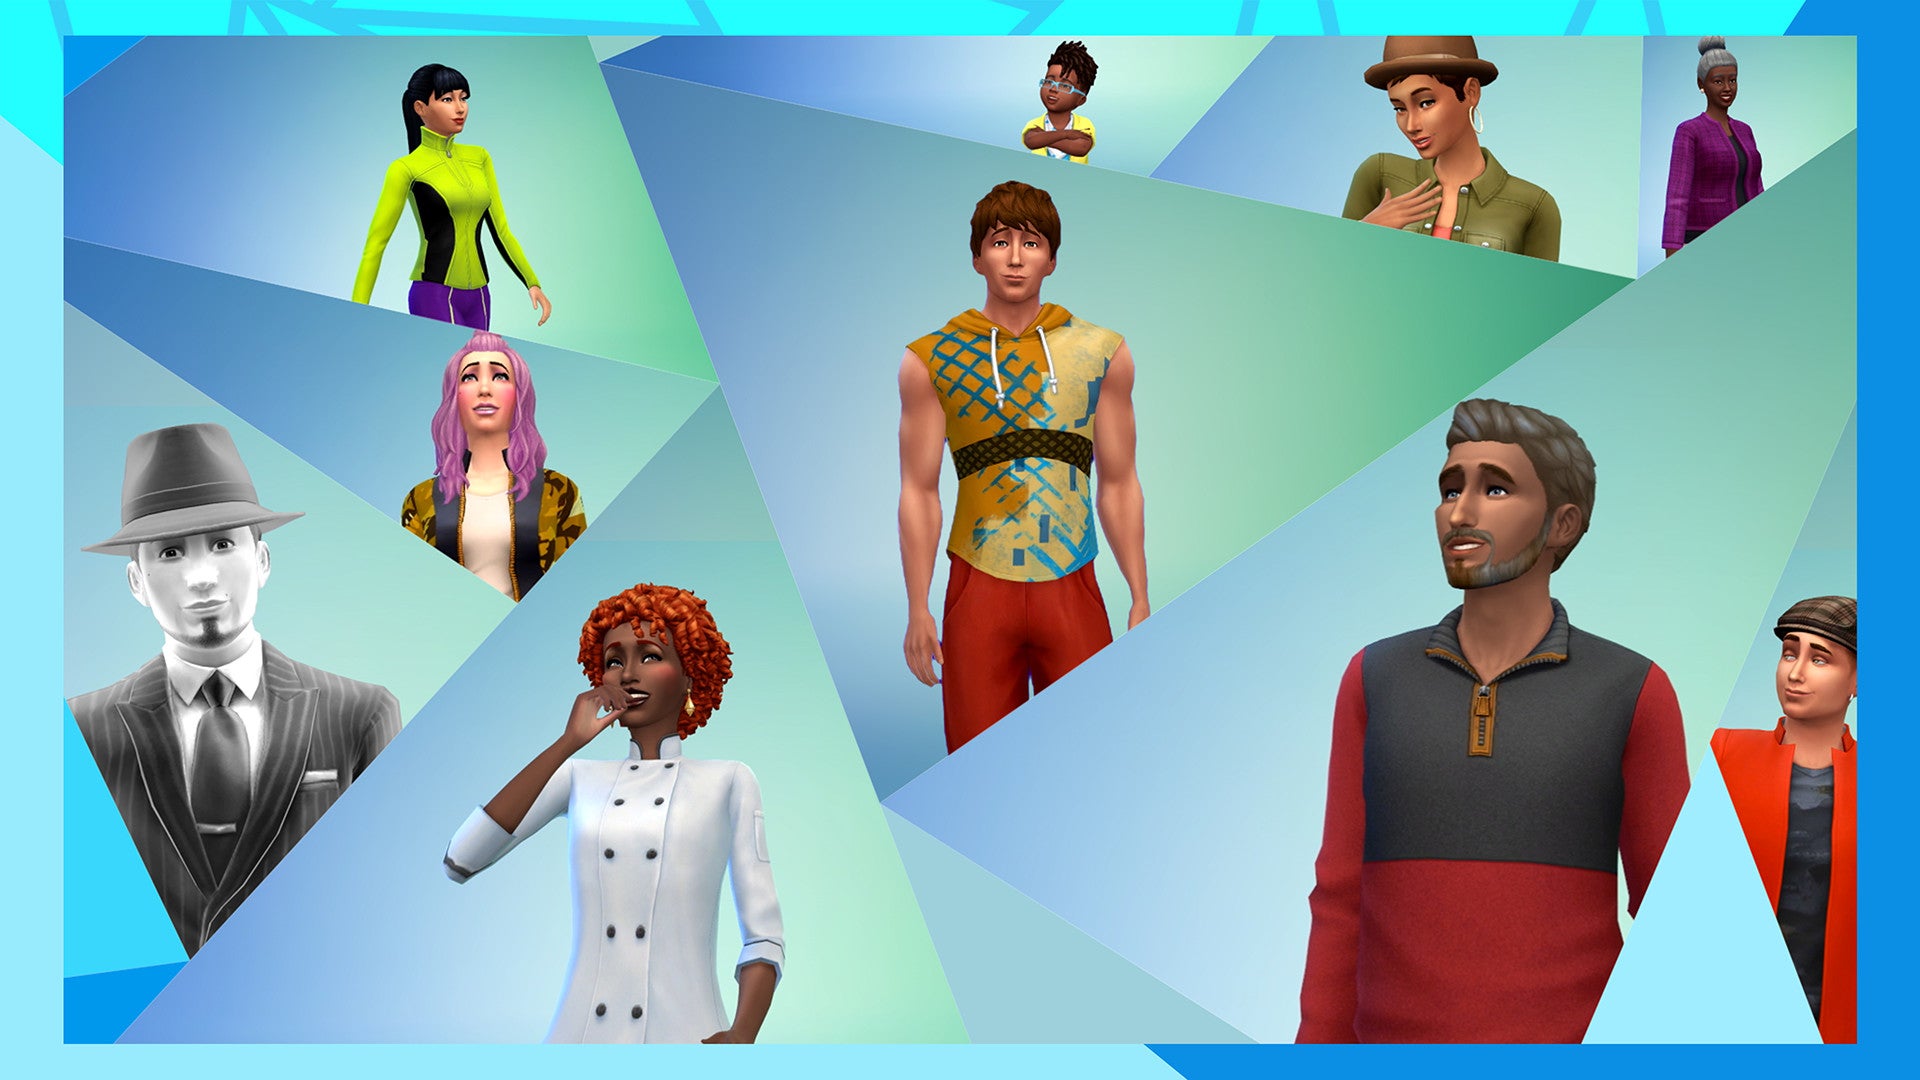 Obrazki dla The Sims 4 dostępne za darmo w ten weekend